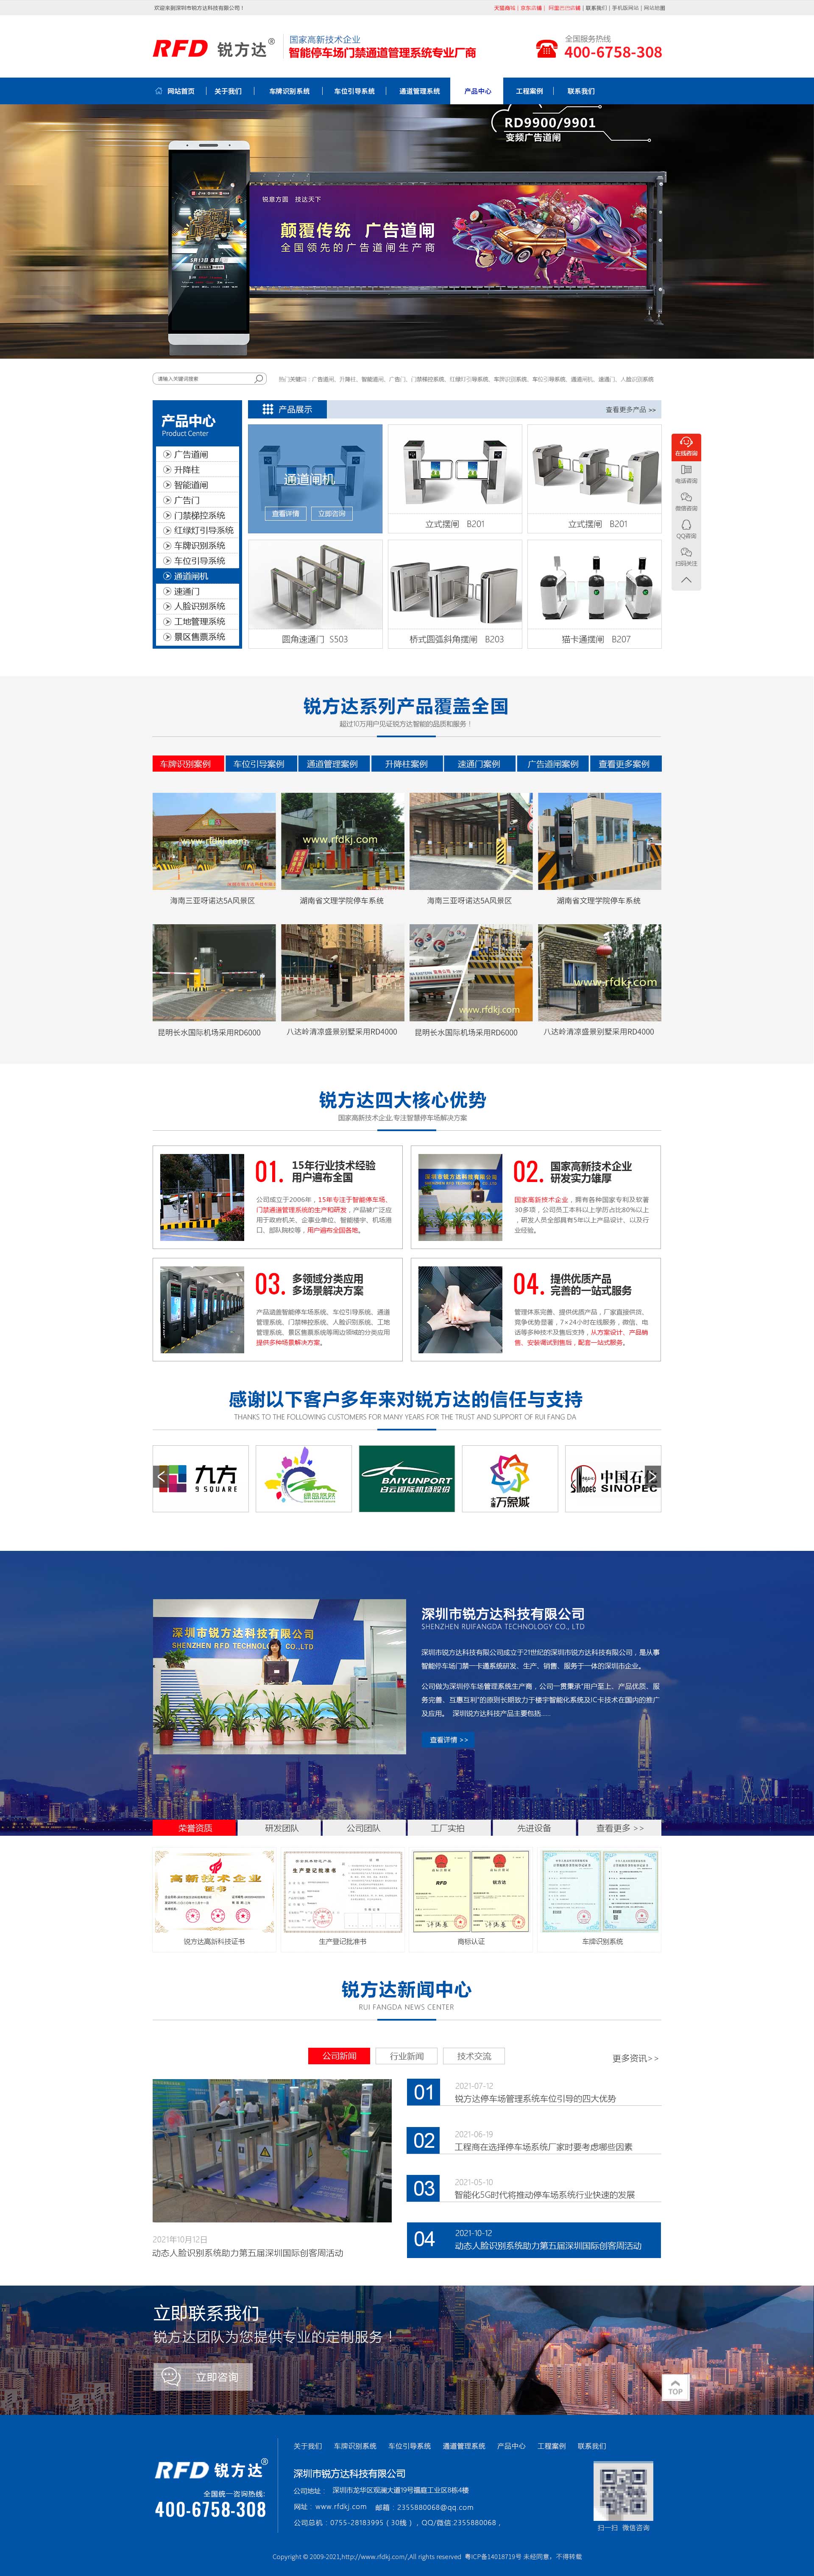 深圳网站建设案例之车牌识别系统厂家锐方达科技